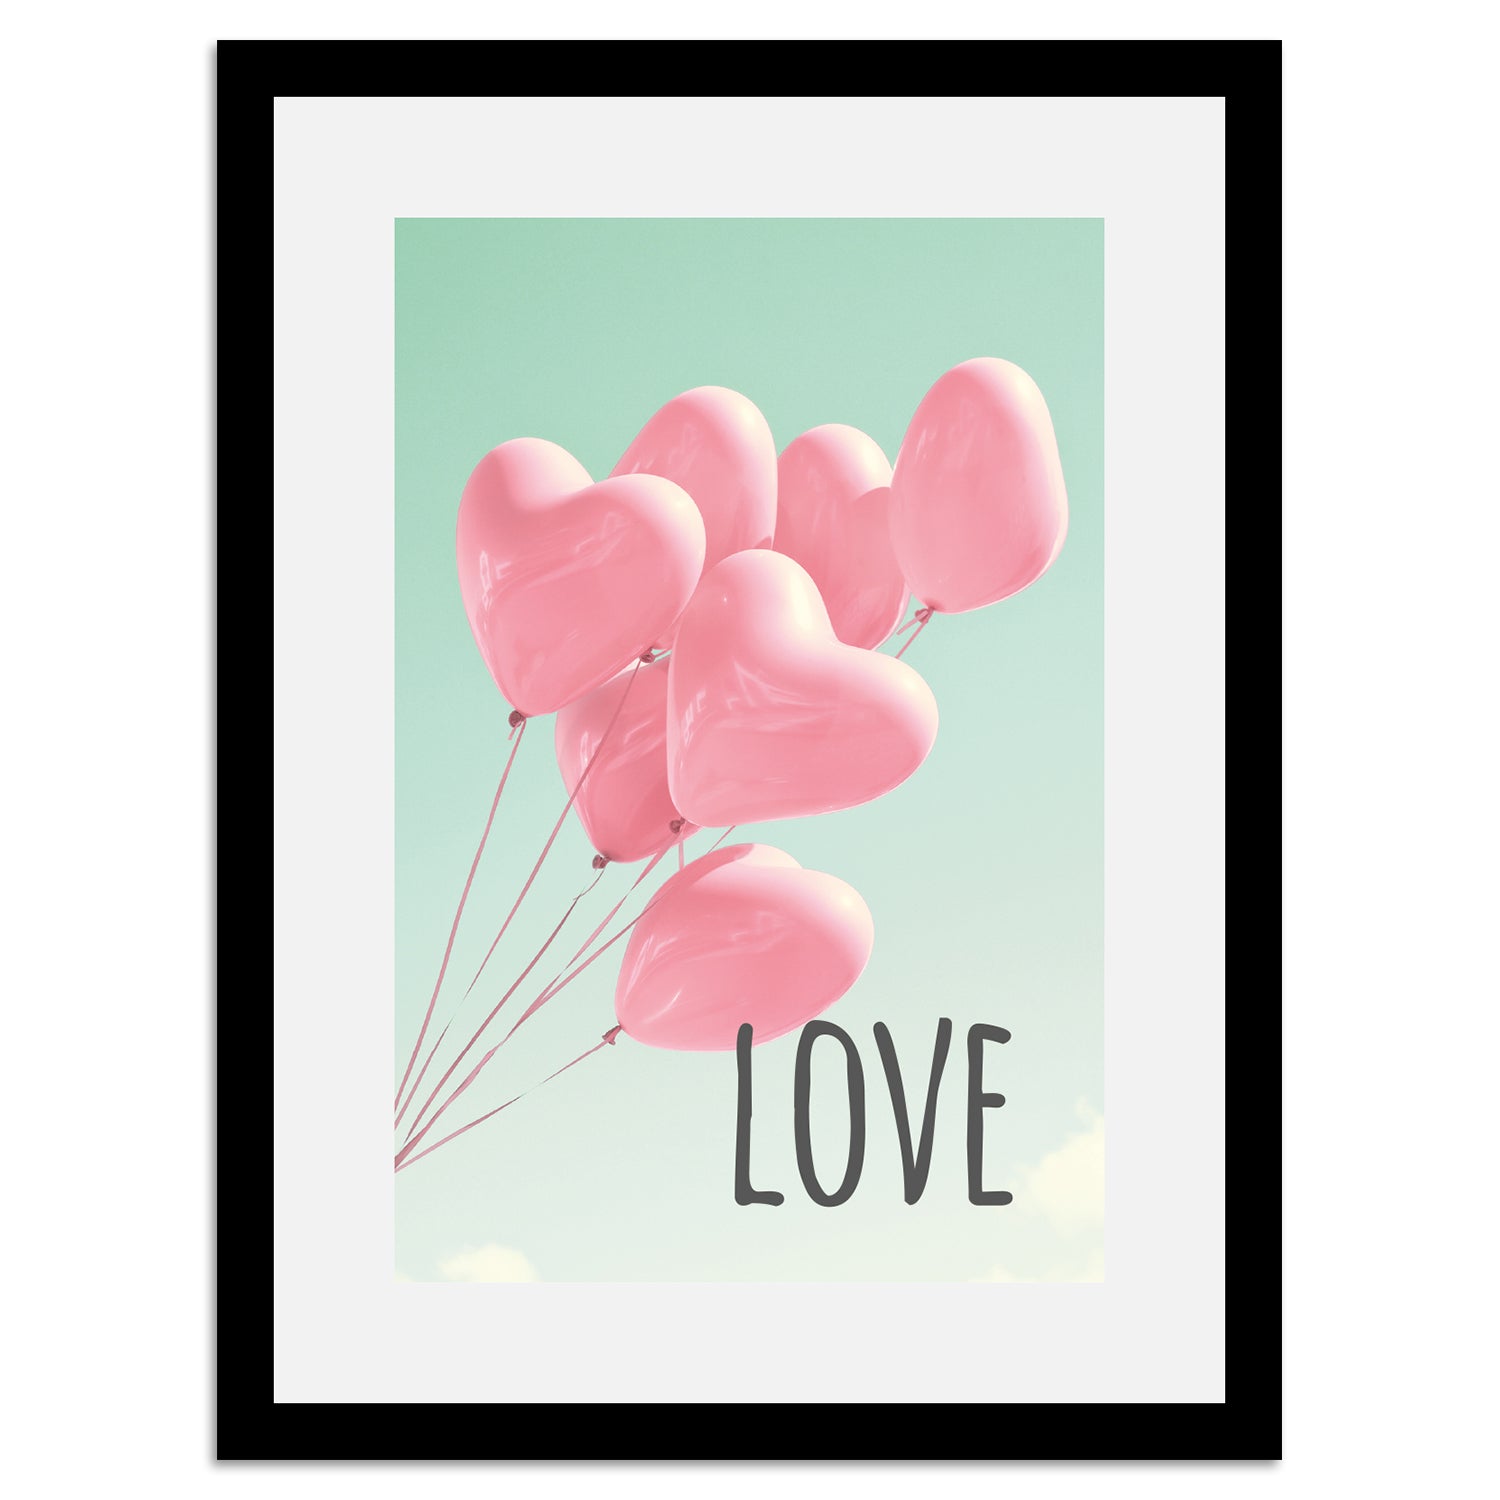 Rahmenbild - Love Balloons